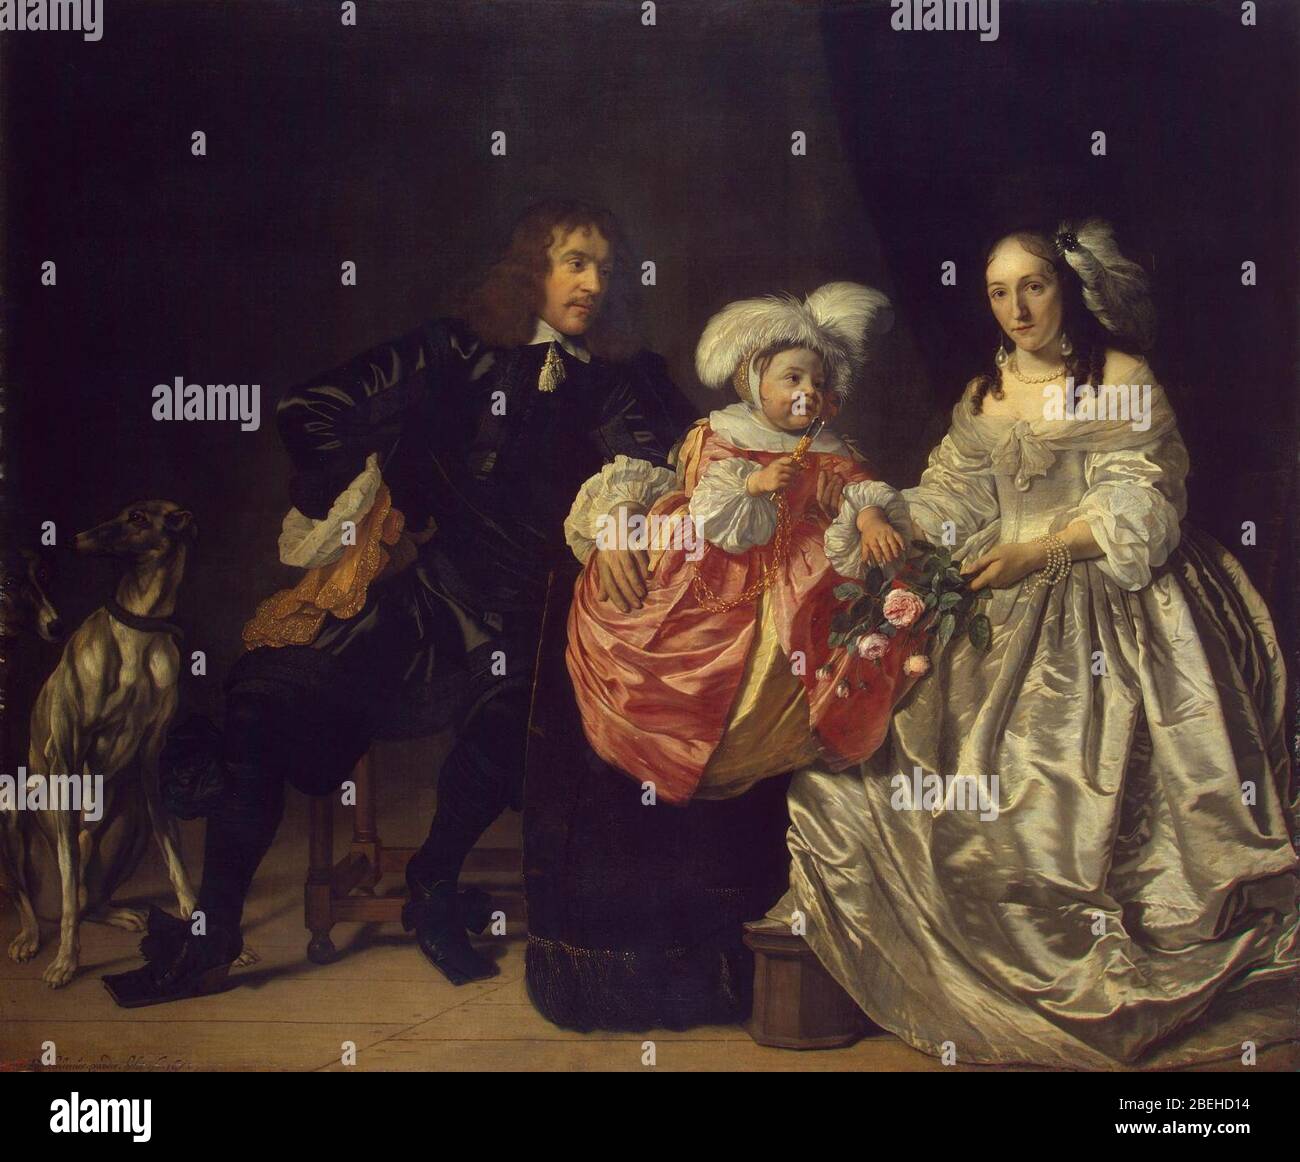 Pieter Lucaszn van de Venne con Anna de Carpentier 1652 van der Helst. Foto Stock